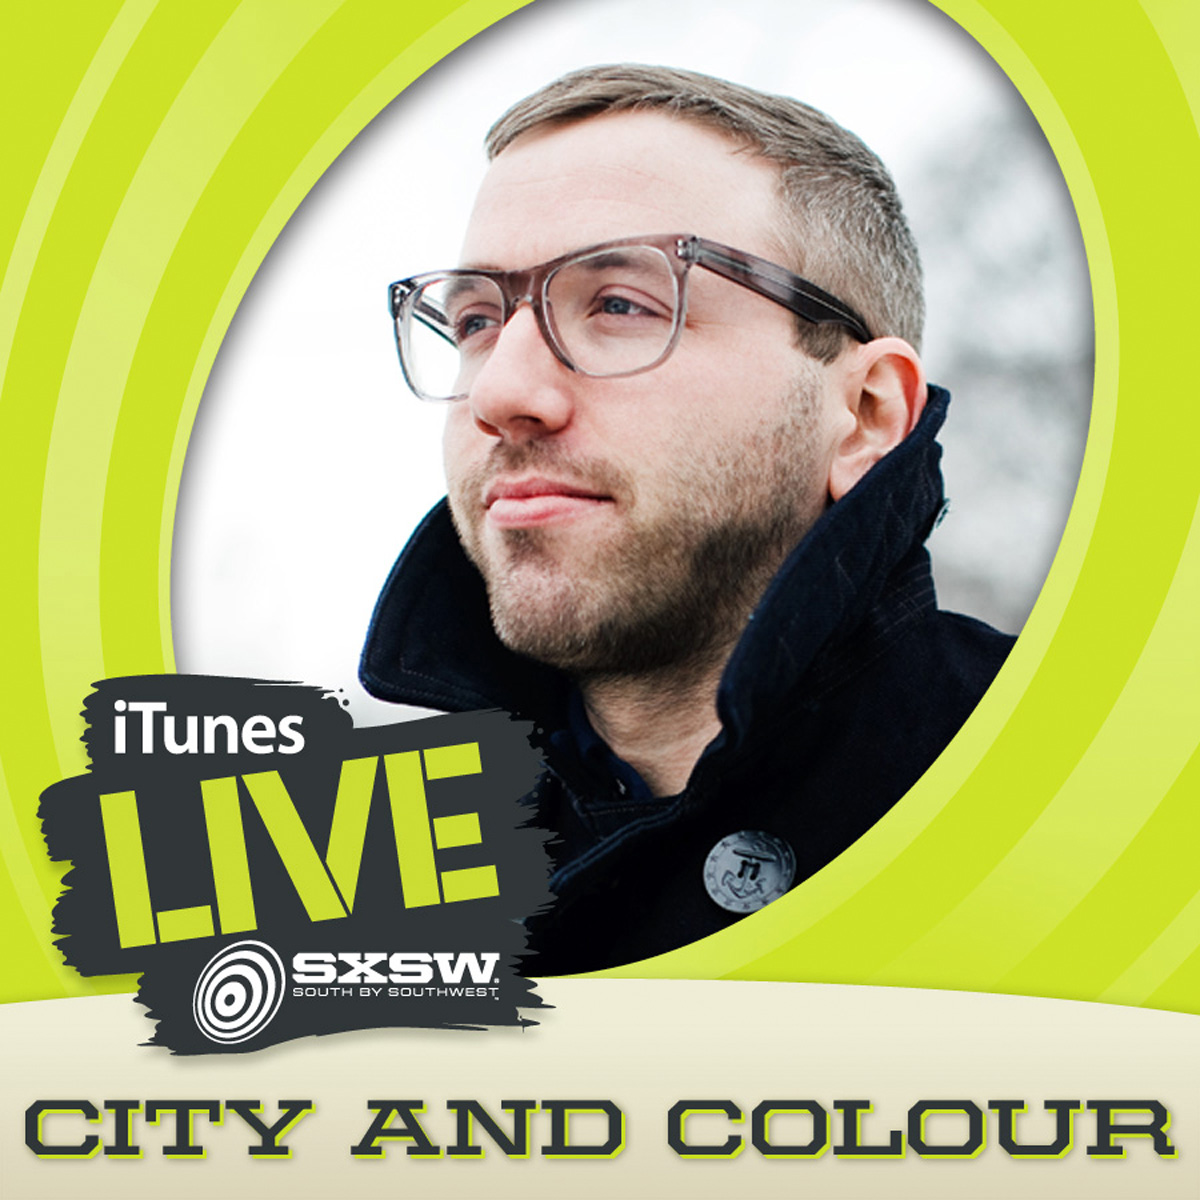 Discographie - City And Colour - Dallas Green - iTunes Live SXSW